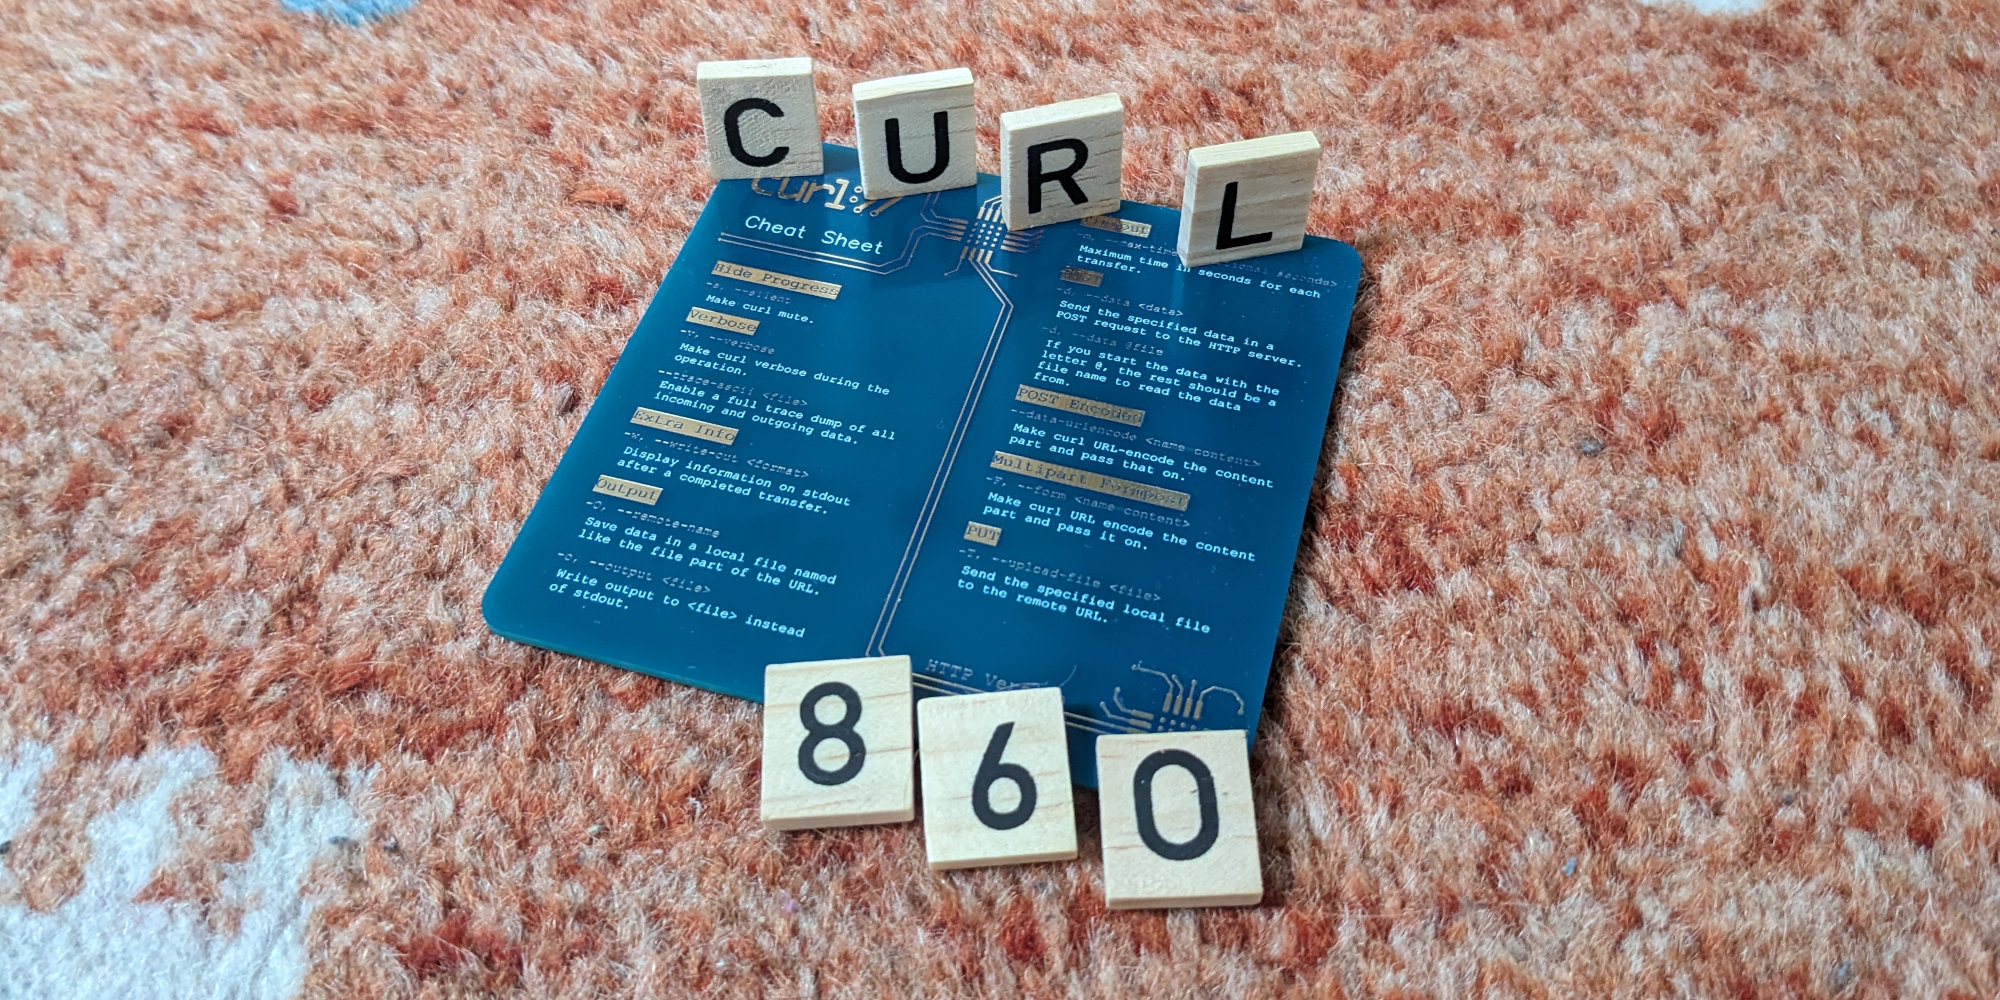 curl-8 6 0